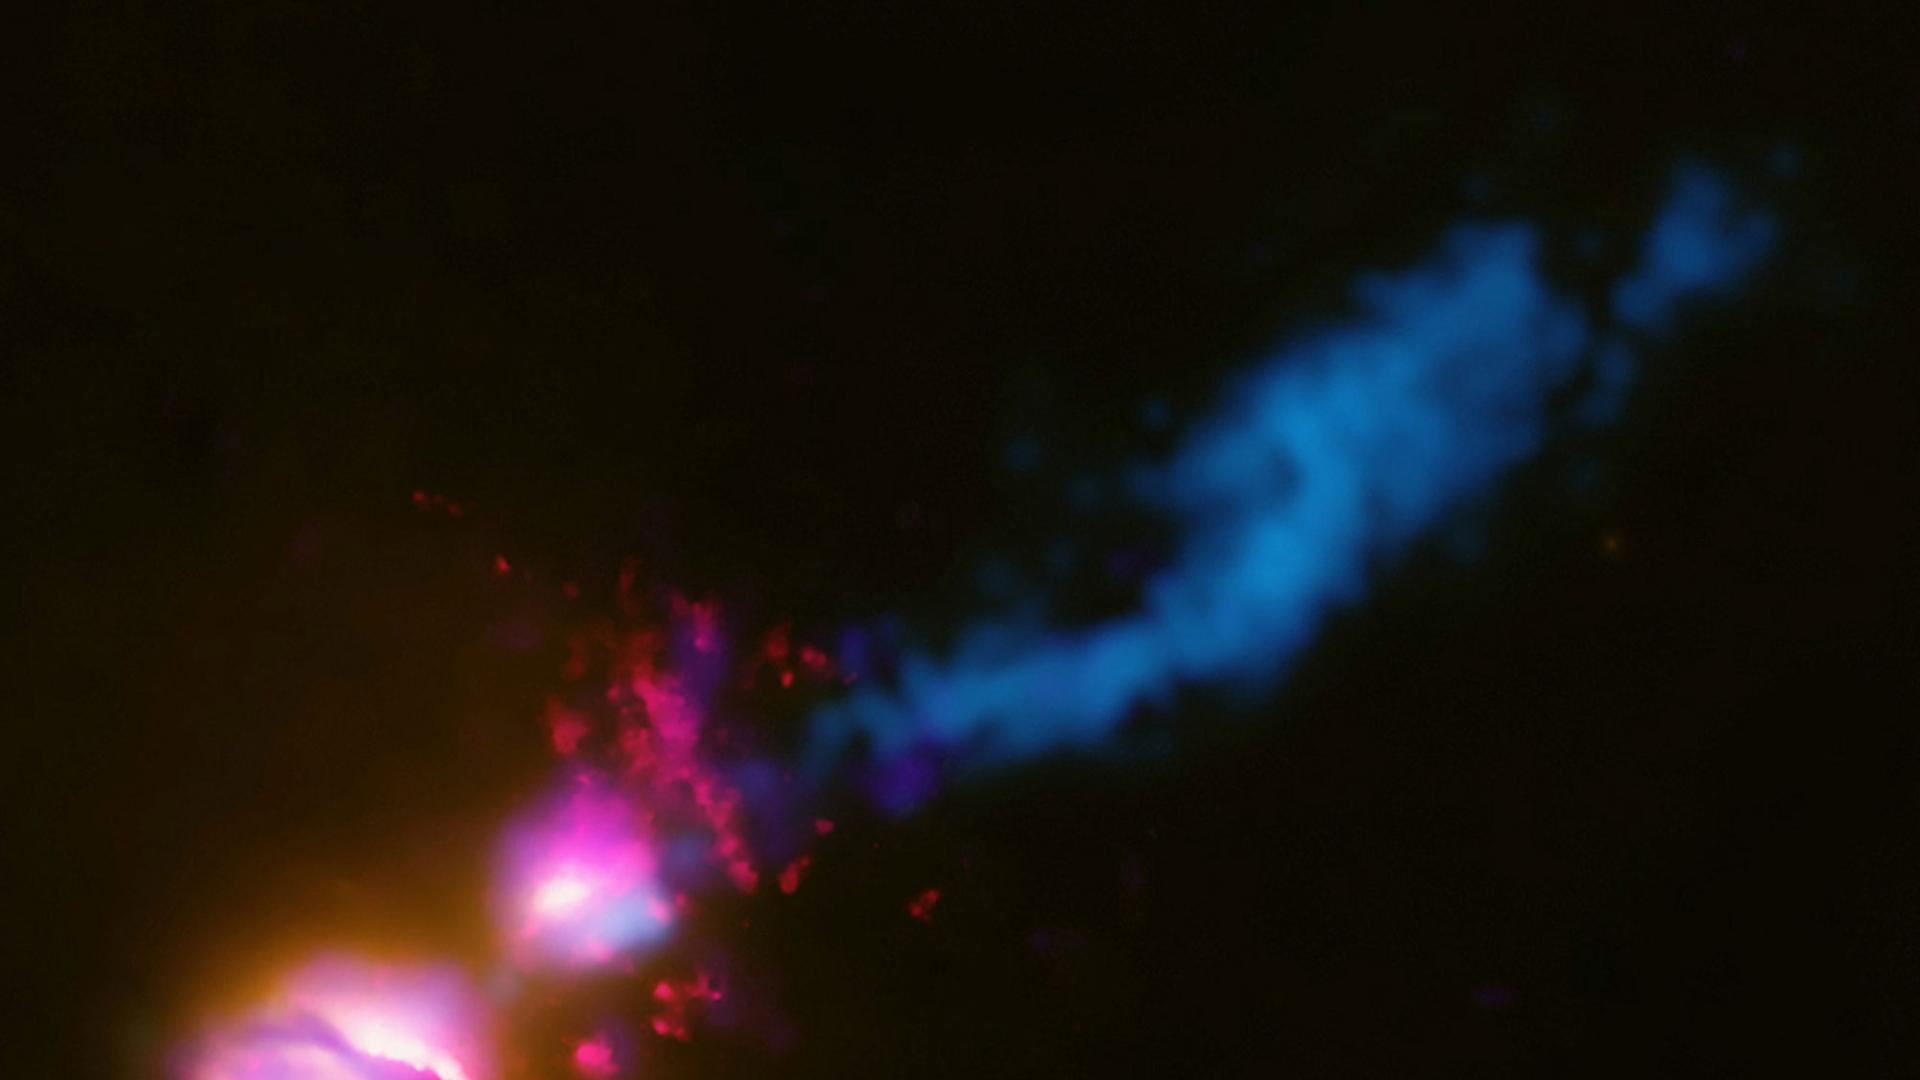 Das Bild der NASA zeigt, wie der Jet (blauer Strahl) von der Hauptgalaxie (linker unterer Fleck) ihre begleitende Galaxie (oberer Fleck) am Rande trifft. Daraufhin wird der Jet gestört und fächert sich zum rechten oberen Bildrand hin auf. Astronomen haben nach eigenen Angaben damit erstmals beobachtet, wie der Materiestrahl eines Schwarzen Loches eine benachbarte Galaxie trifft und dabei abgelenkt wird.